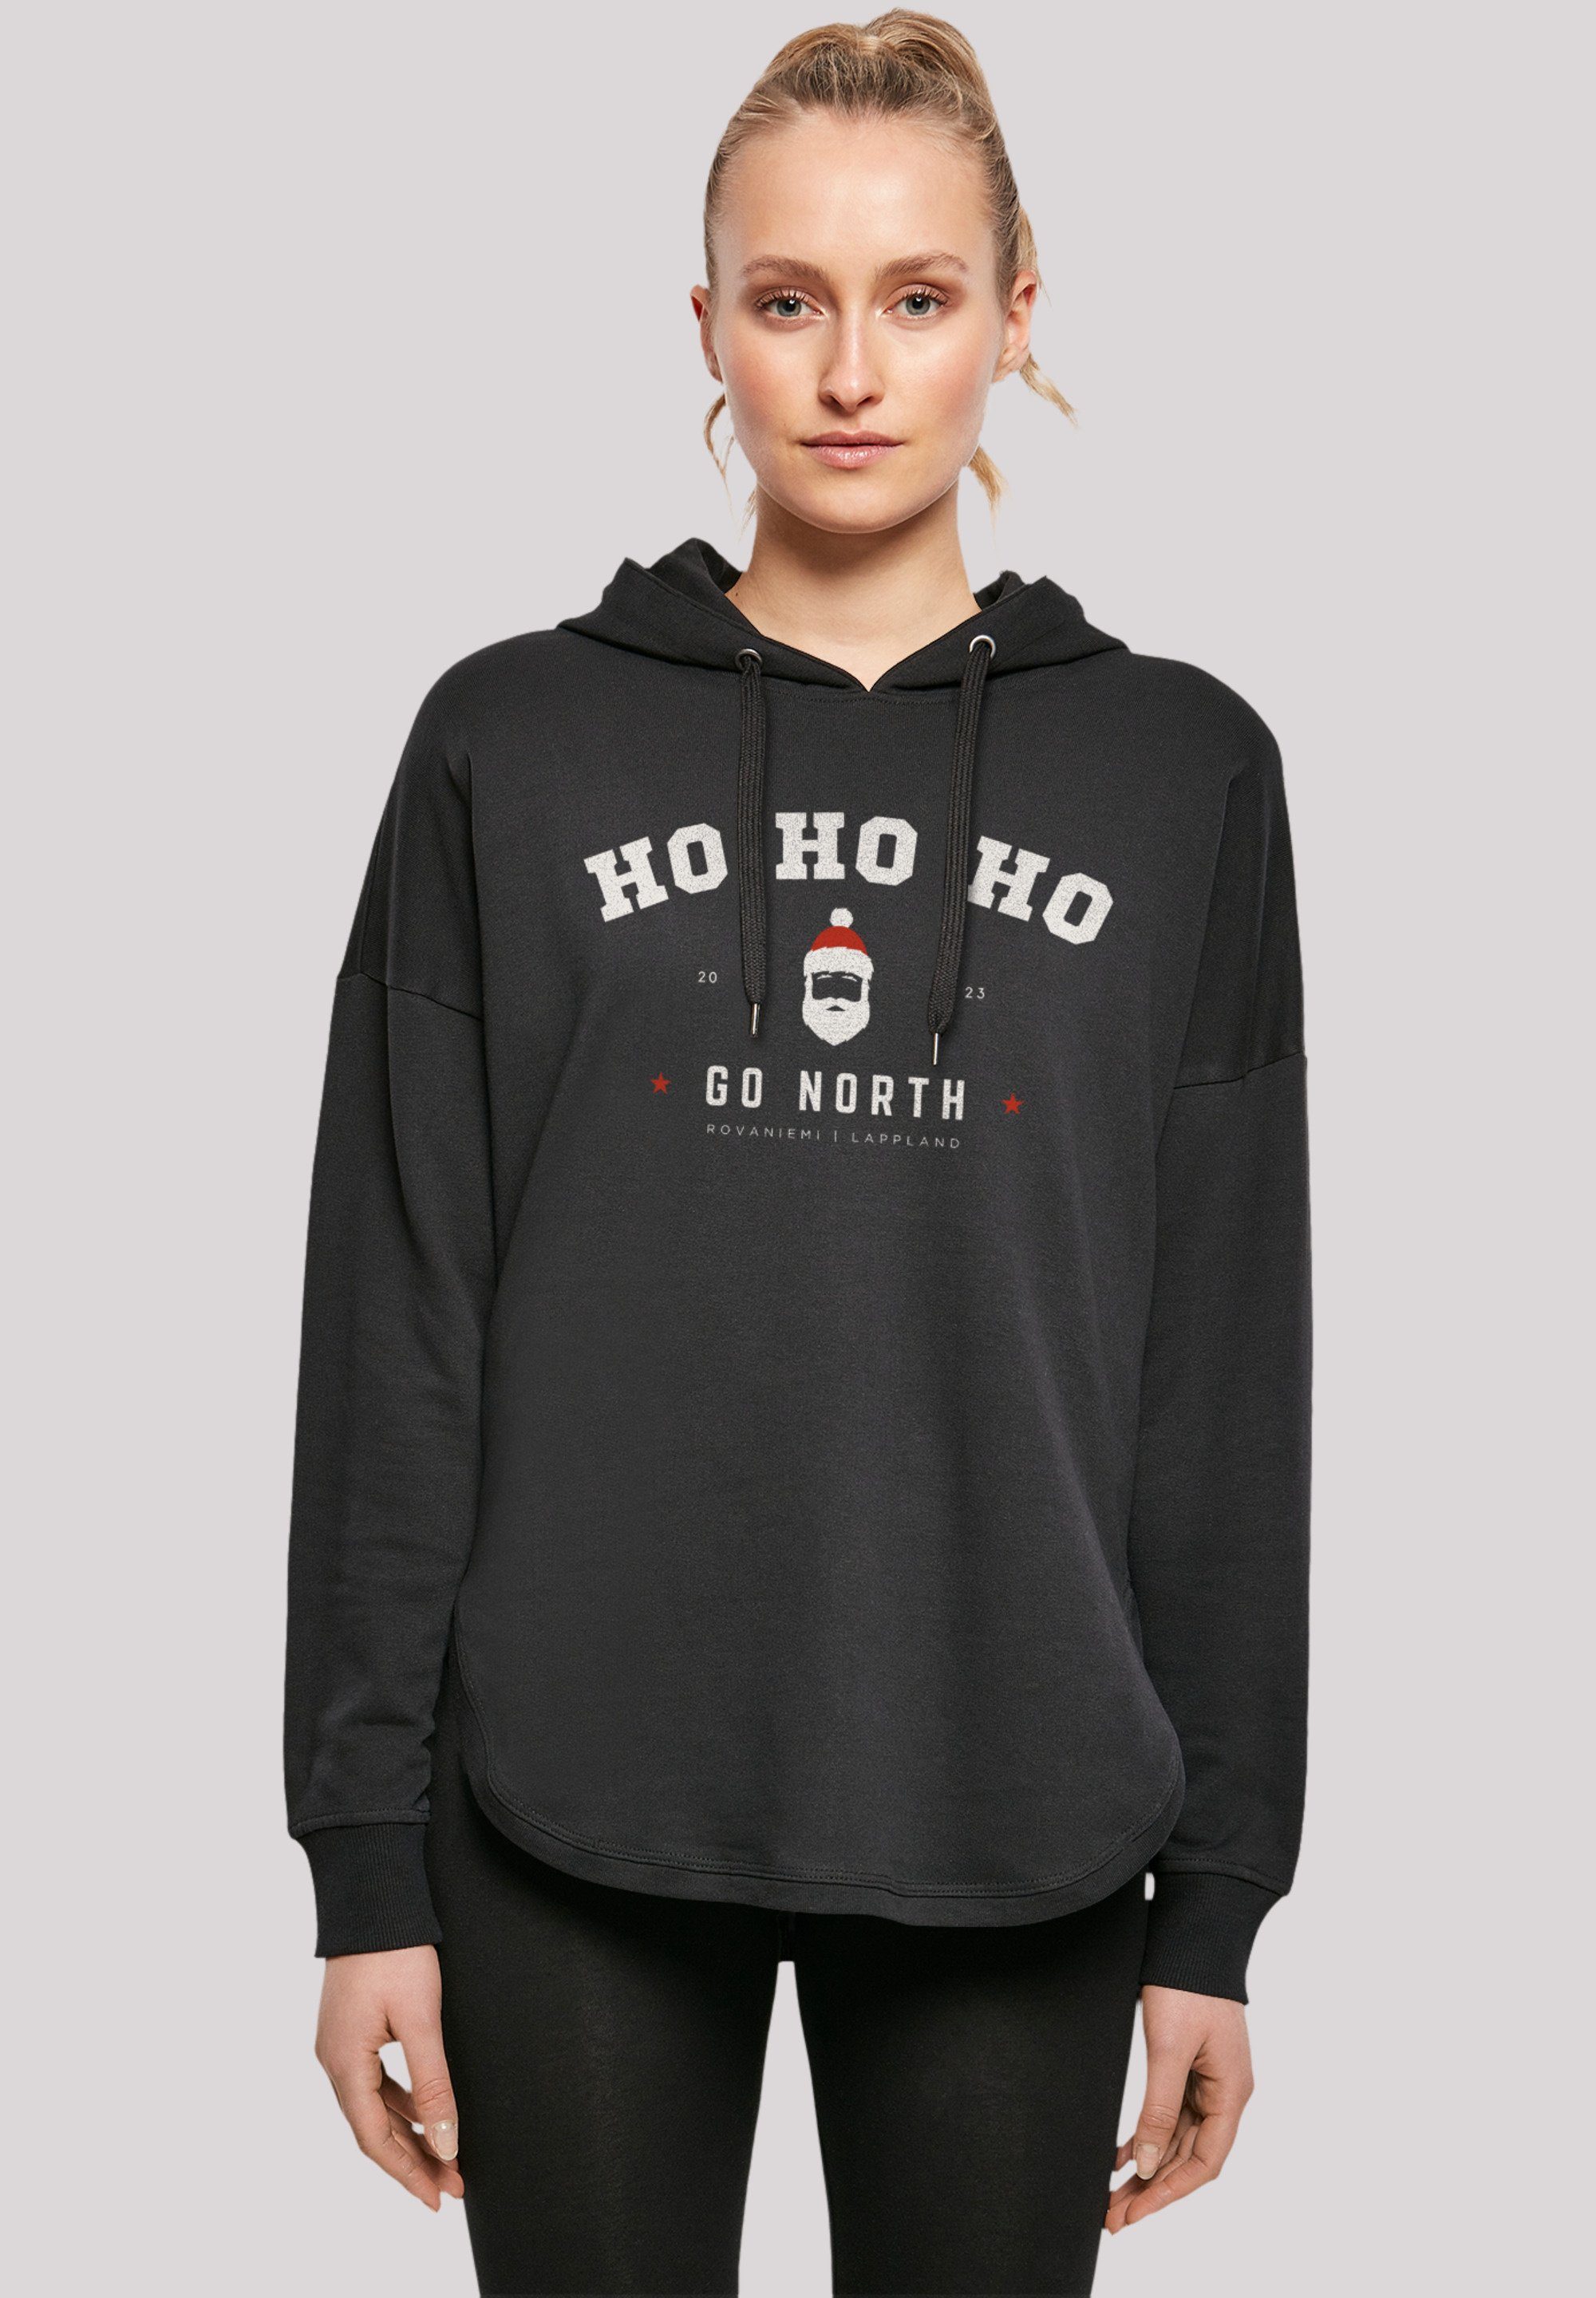 Ho Geschenk, schwarz Ho F4NT4STIC Sweatshirt Logo Santa Claus Weihnachten Weihnachten, Ho